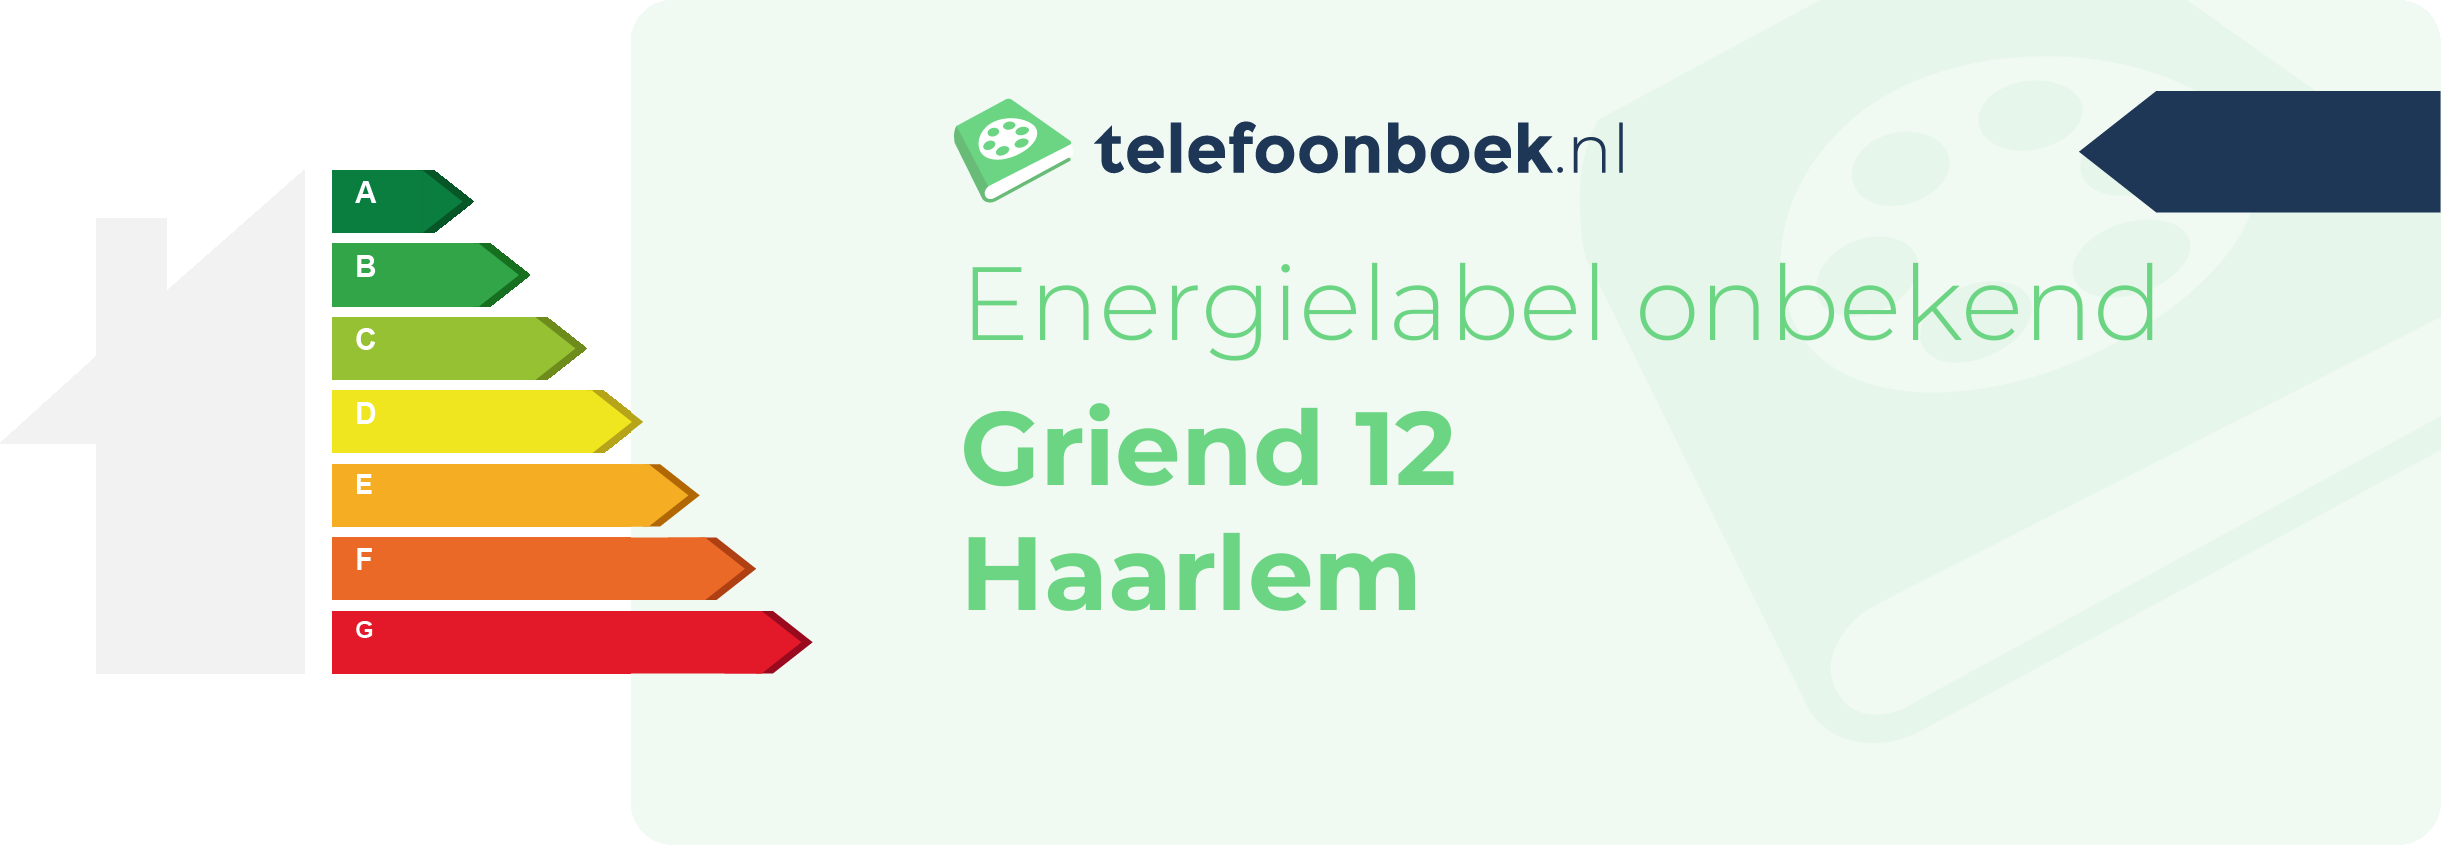 Energielabel Griend 12 Haarlem